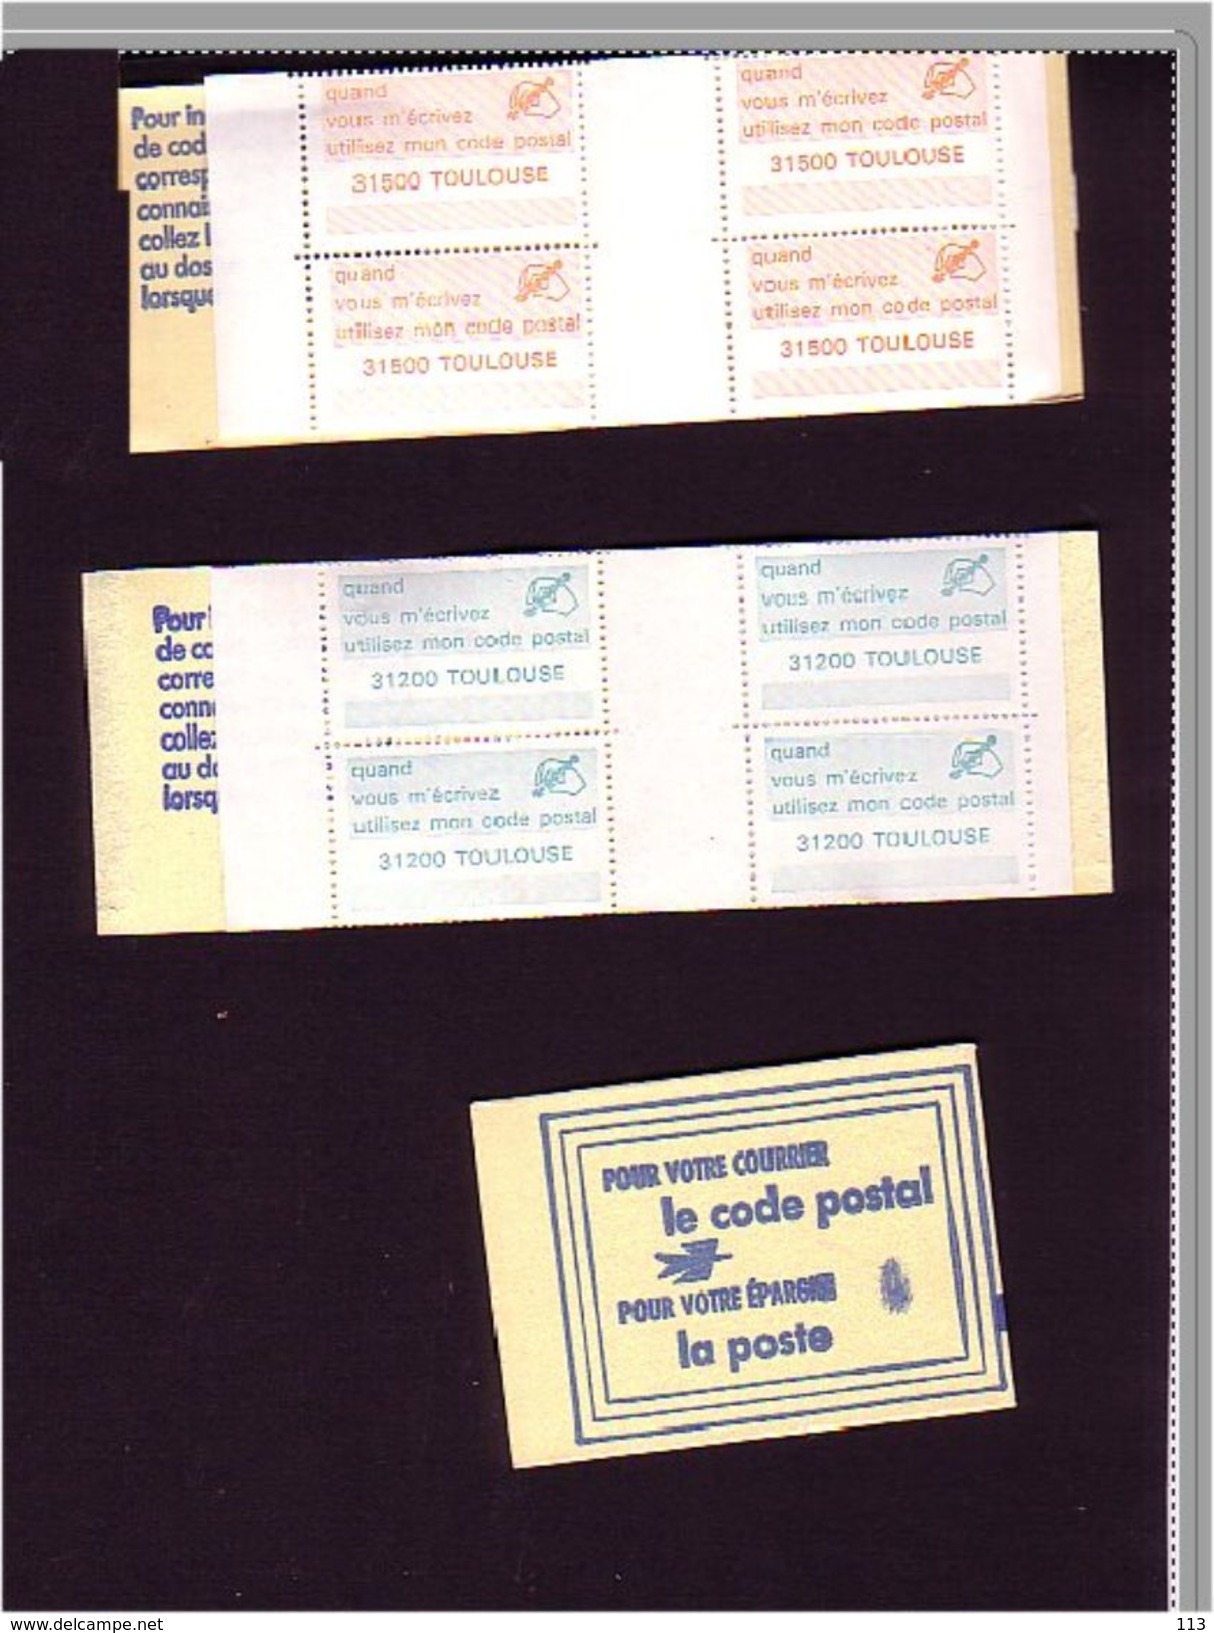 !!!.FRANCE 4 Carnets Complets Vignettes Code Postal 31000, 31200, 31500, 31300 - Documents Of Postal Services